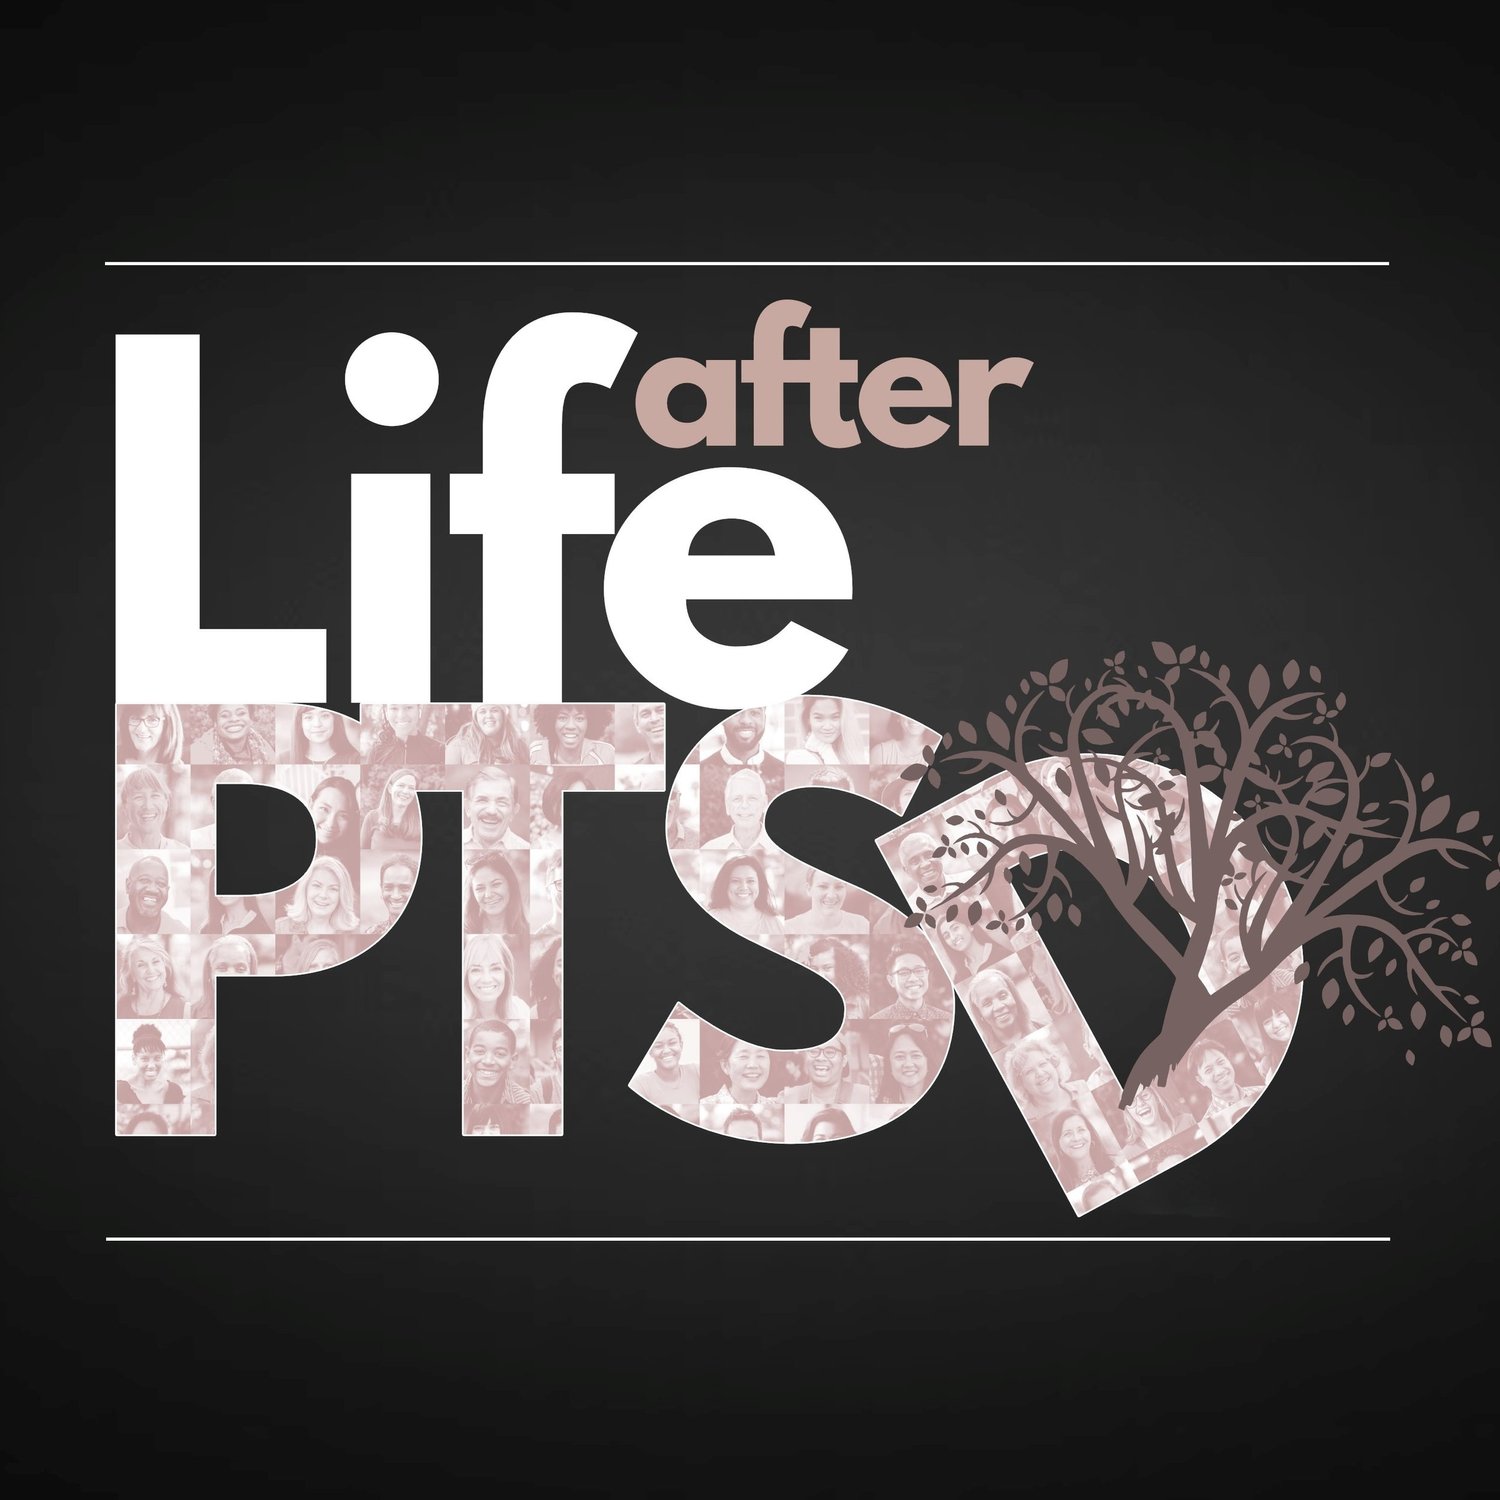 Life After PTSD